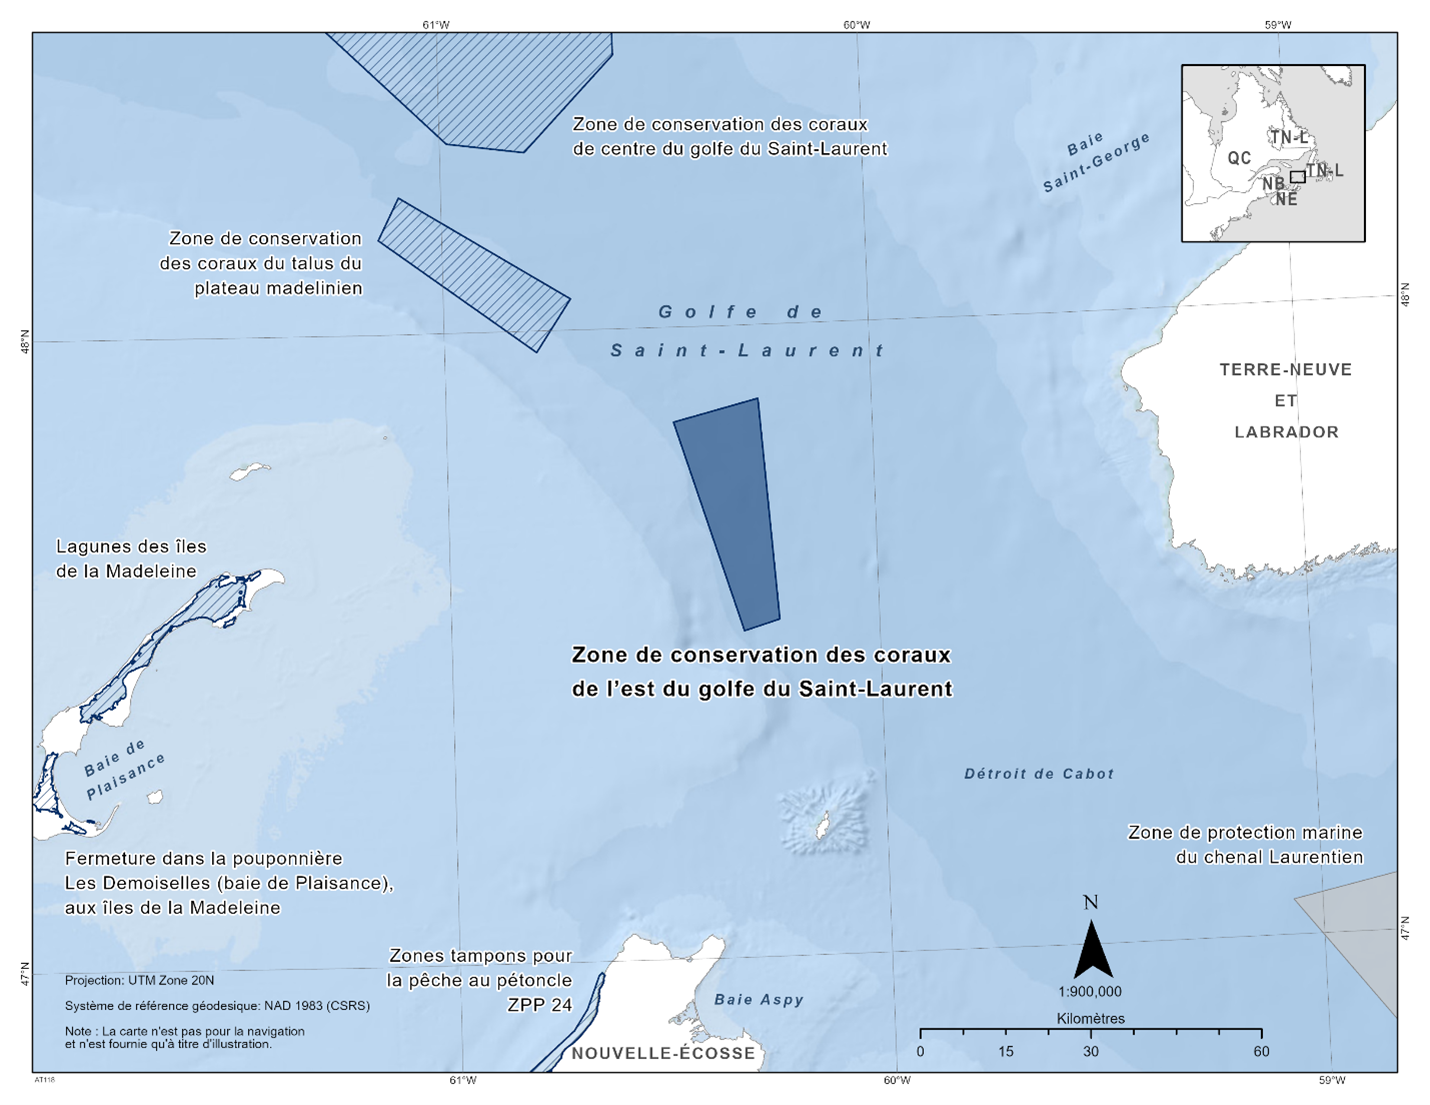 Carte de la zone de conservation des coraux de l'est du golfe du Saint-Laurent représentée en bleu foncé. La carte présente également les autres refuges marins de la zone par des lignes diagonales bleu foncé (zone de conservation des coraux du centre du golfe du Saint-Laurent, pente des hauts-fonds de la Madeleine, fermeture des lagunes des Îles-de-la-Madeleine, pouponnière Les Demoiselles, zone tampon pour le pétoncle ZPP 24).